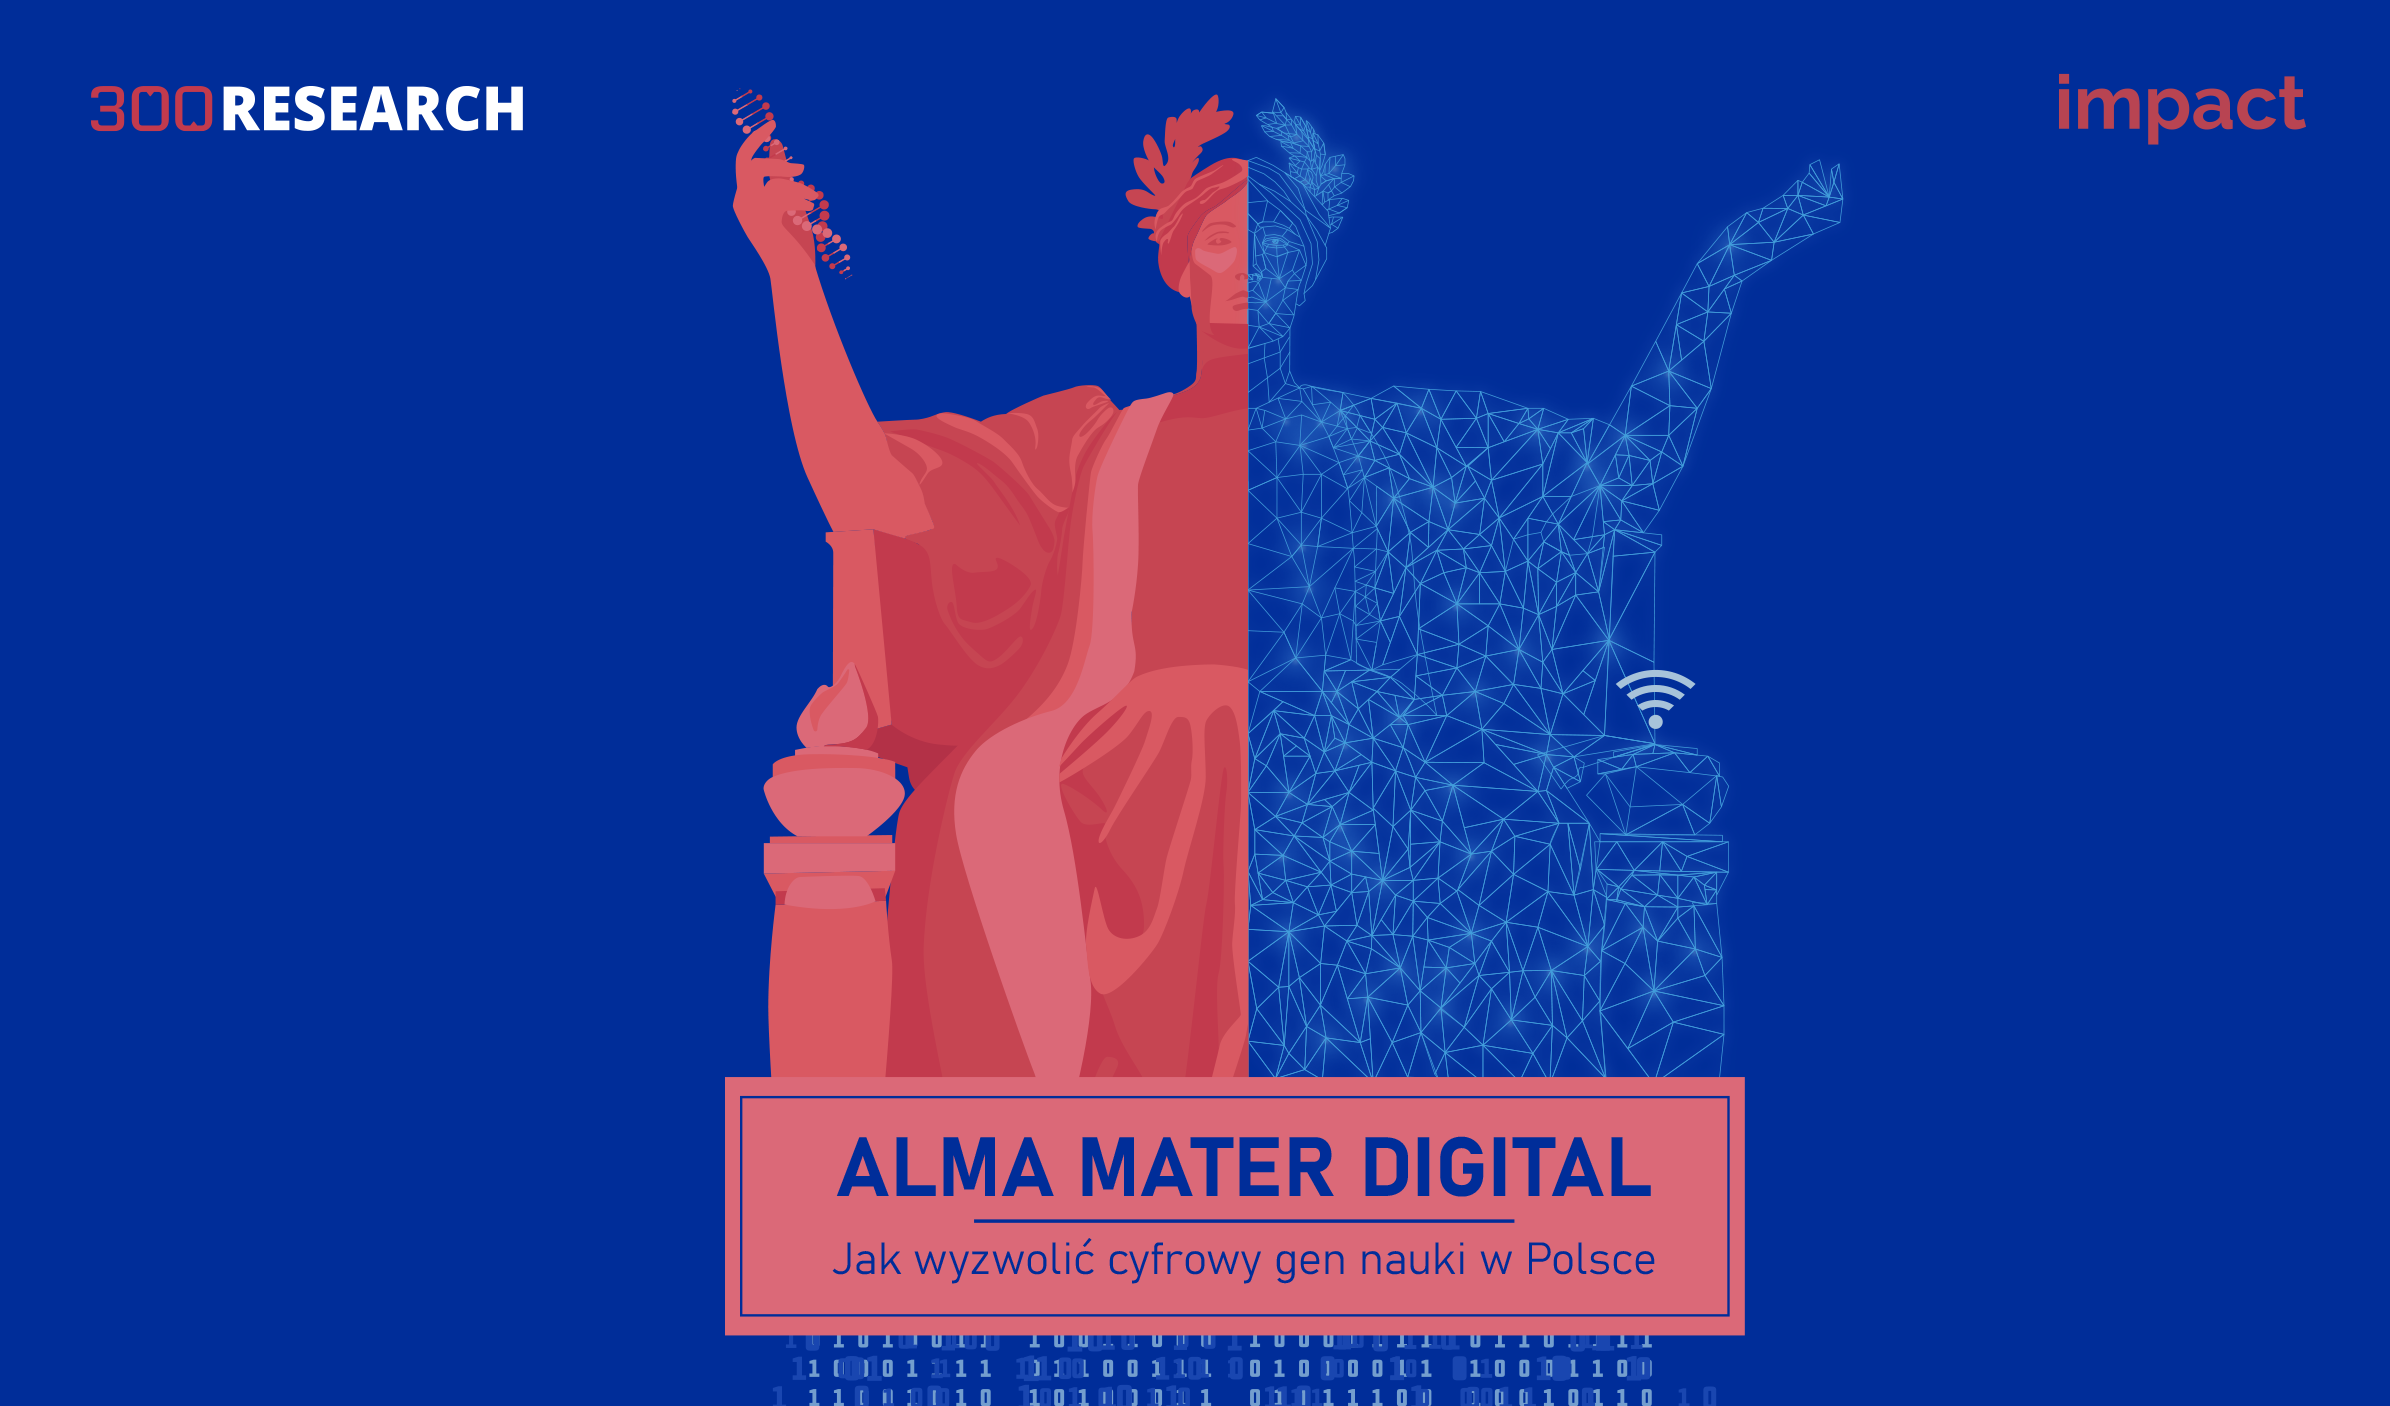 Alma mater digital. Raport 300Research